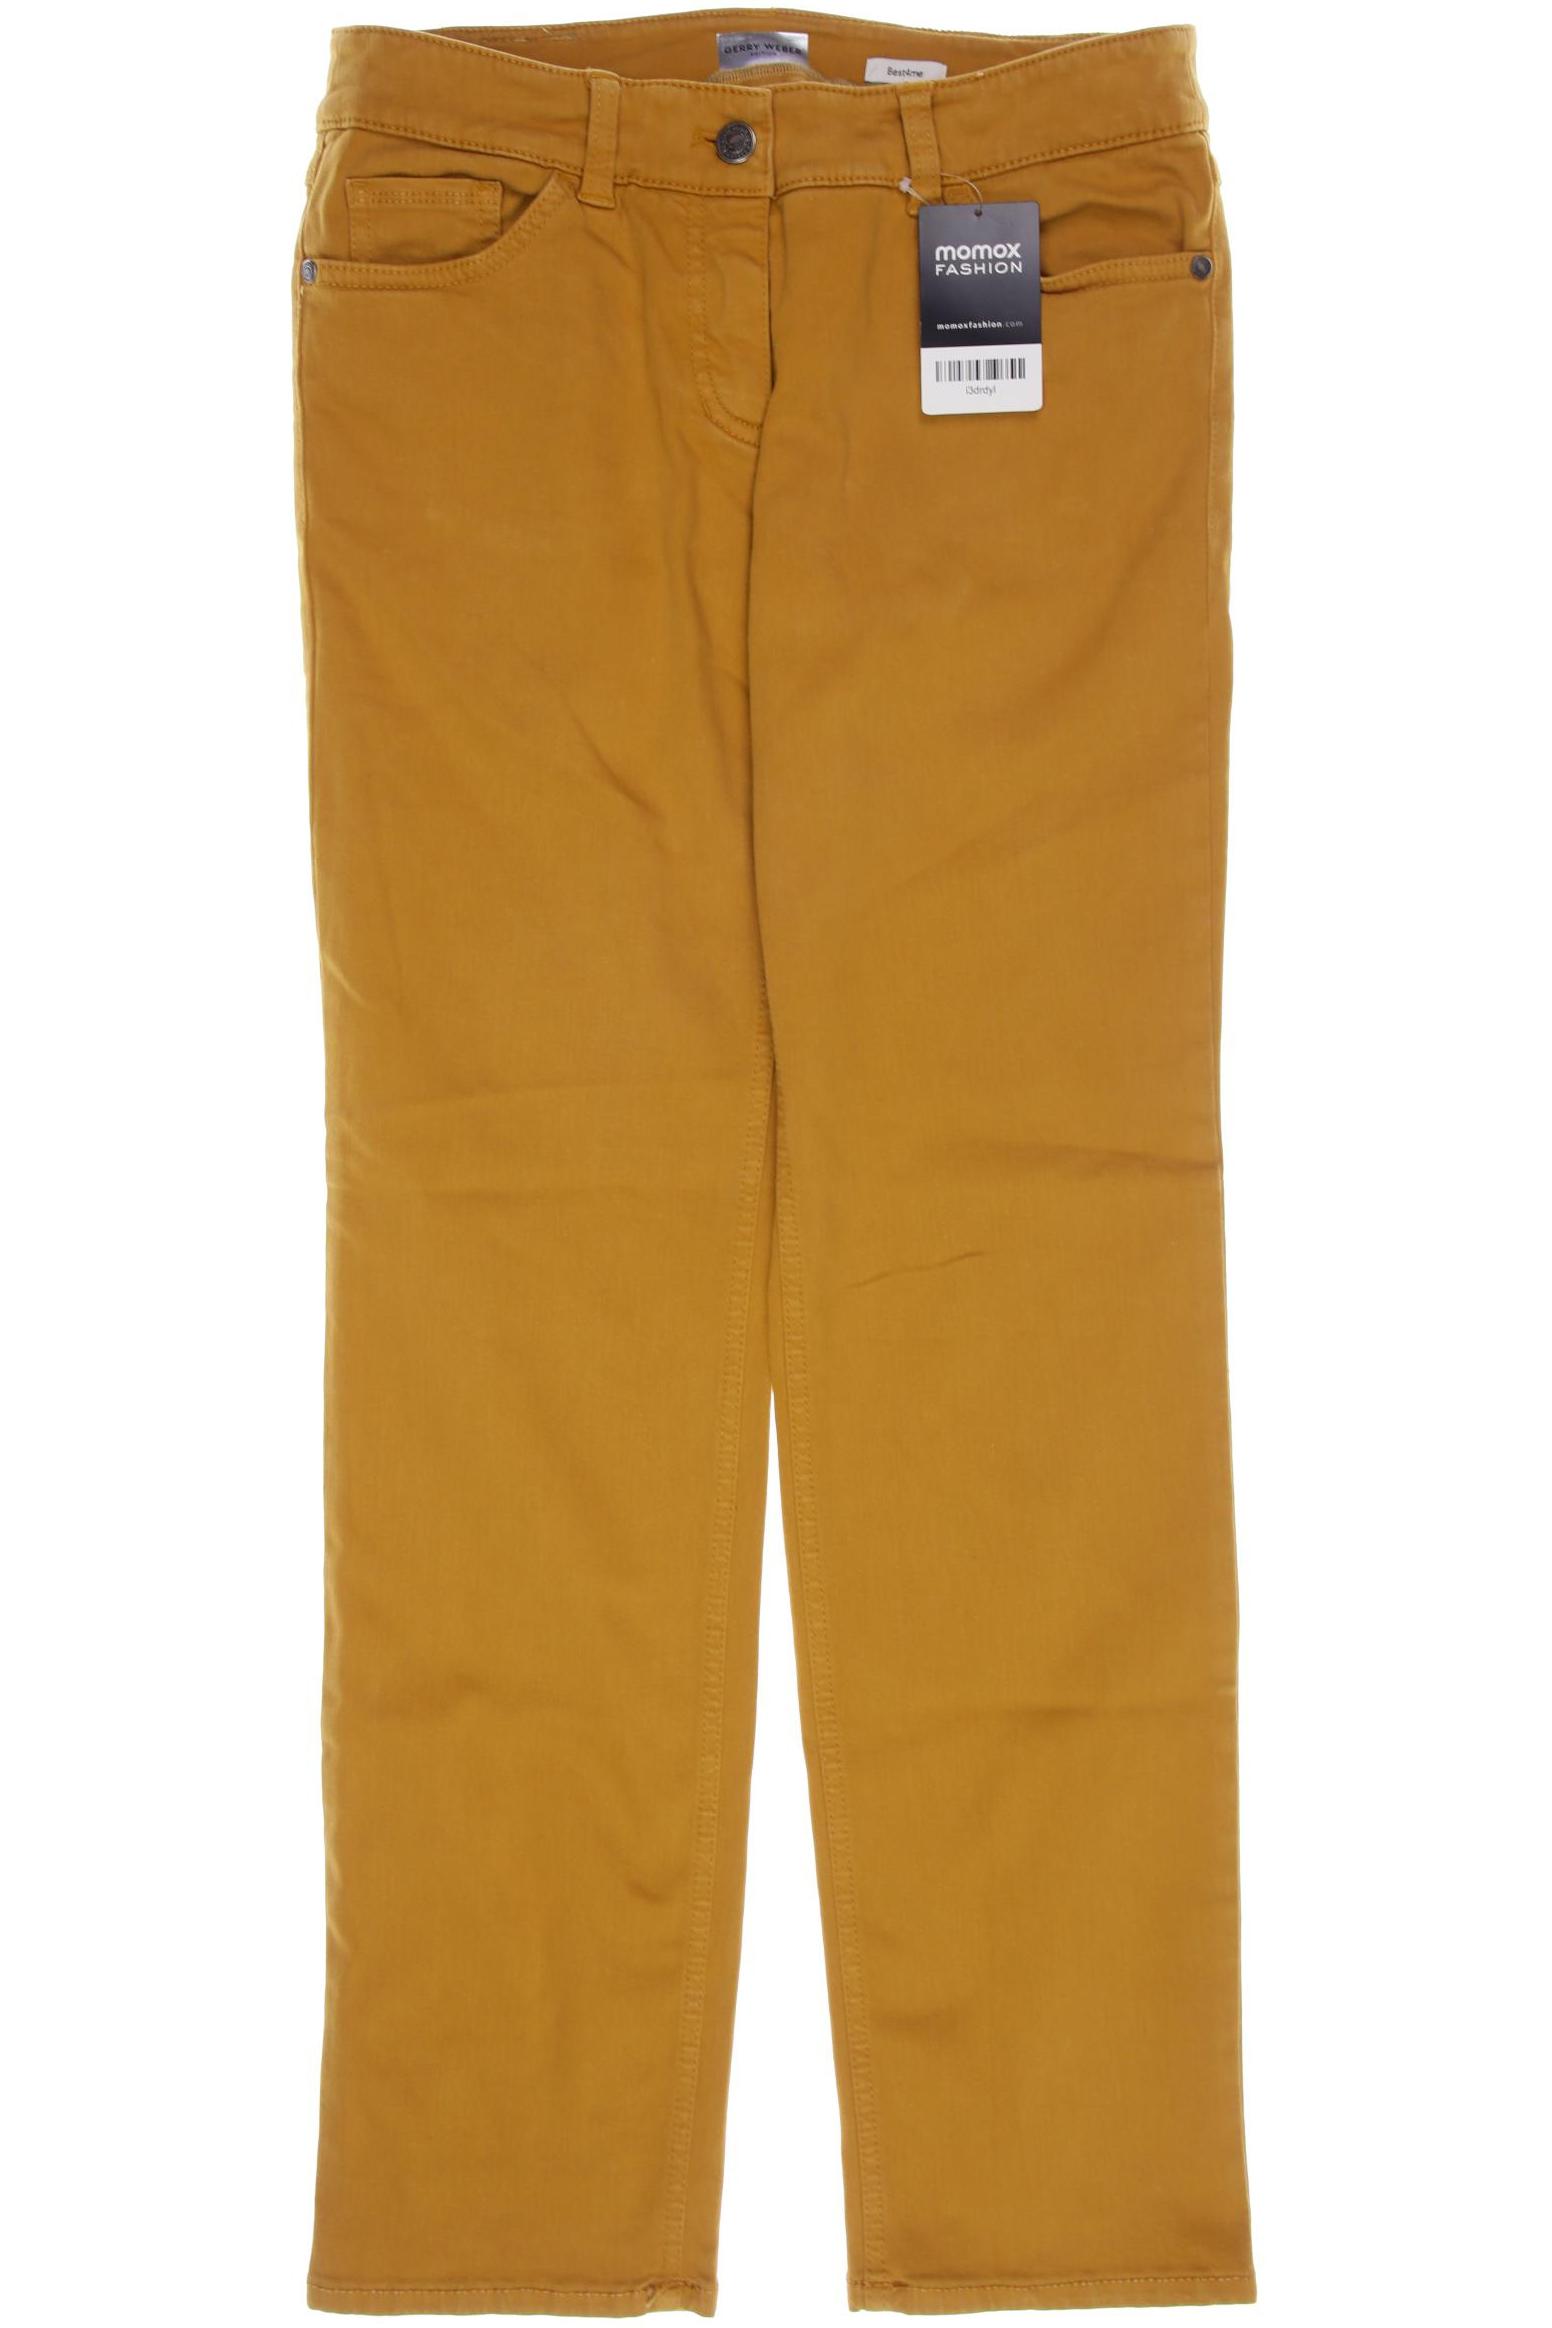 Gerry Weber Damen Jeans, orange von Gerry Weber